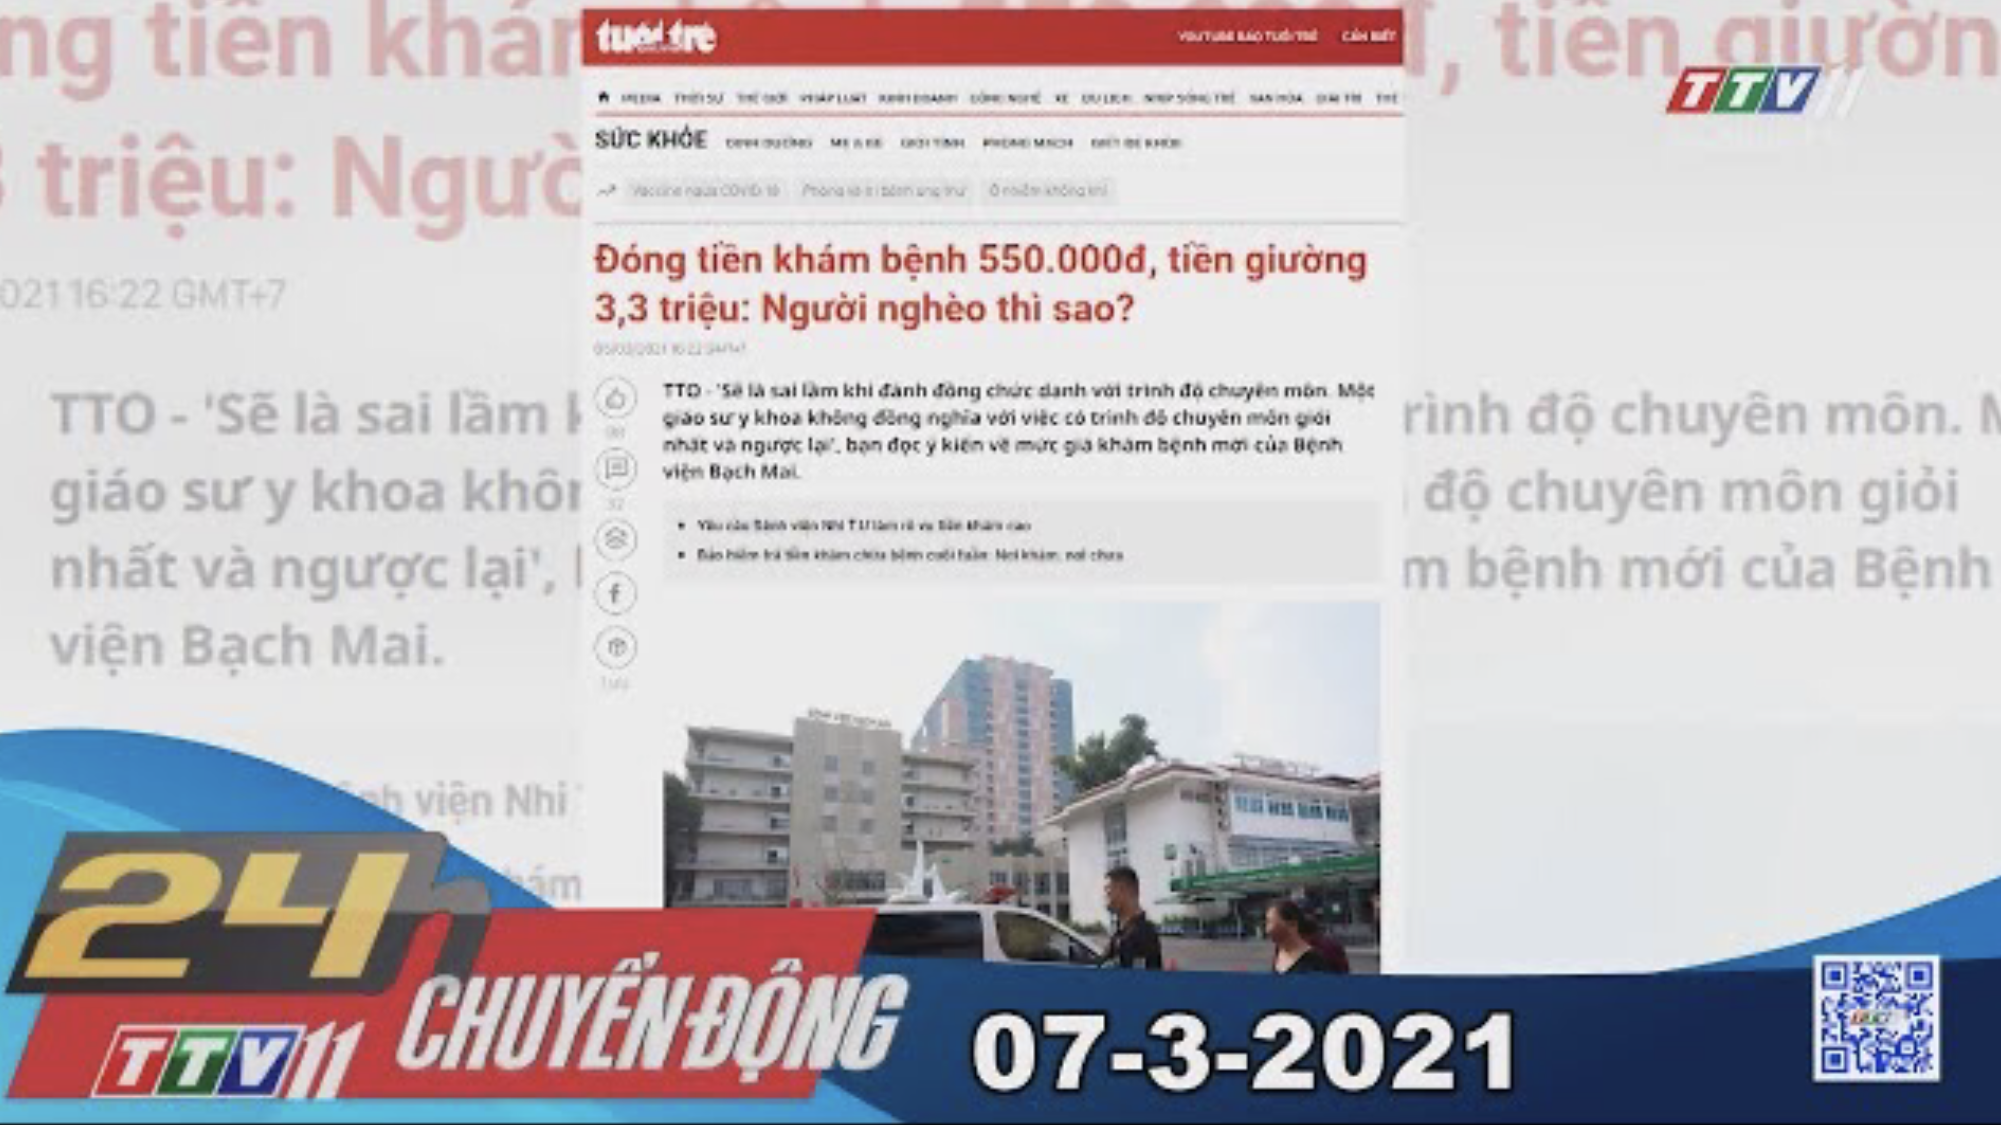 24h Chuyển động 07-3-2021 | Tin tức hôm nay | TayNinhTV